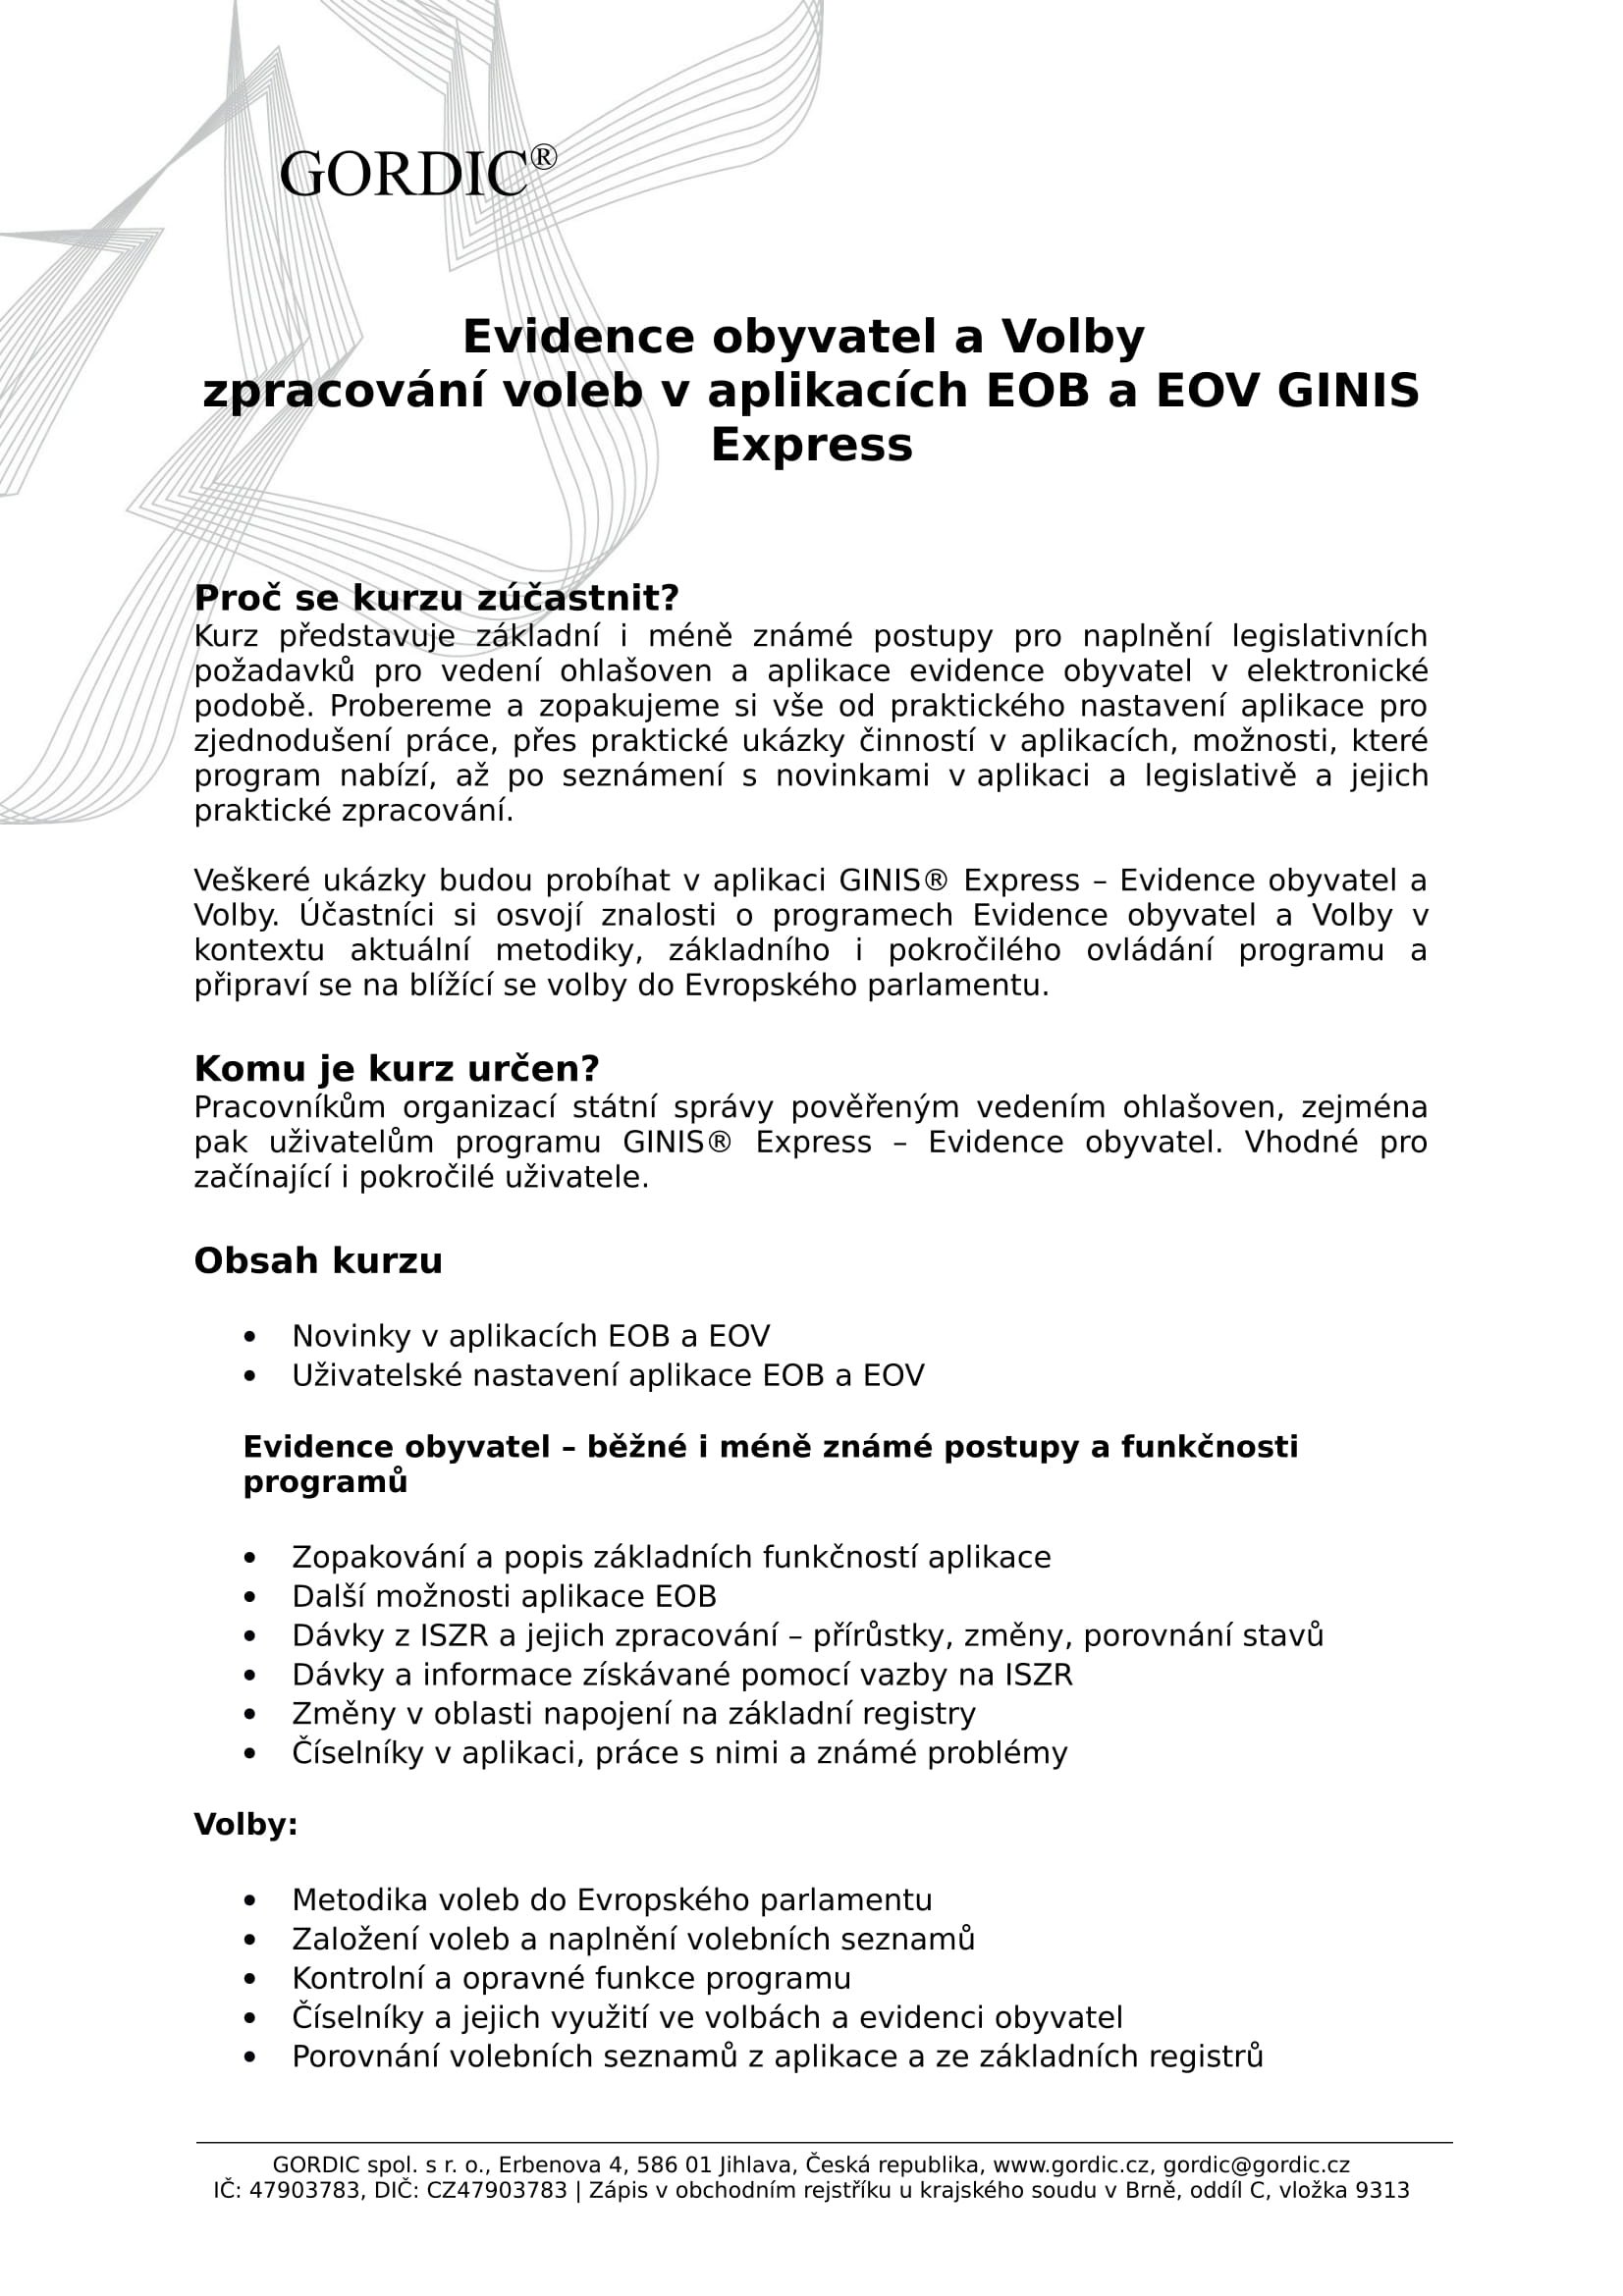 Školení ke zpracování voleb v aplikacích EOB a EOV GINIS Express